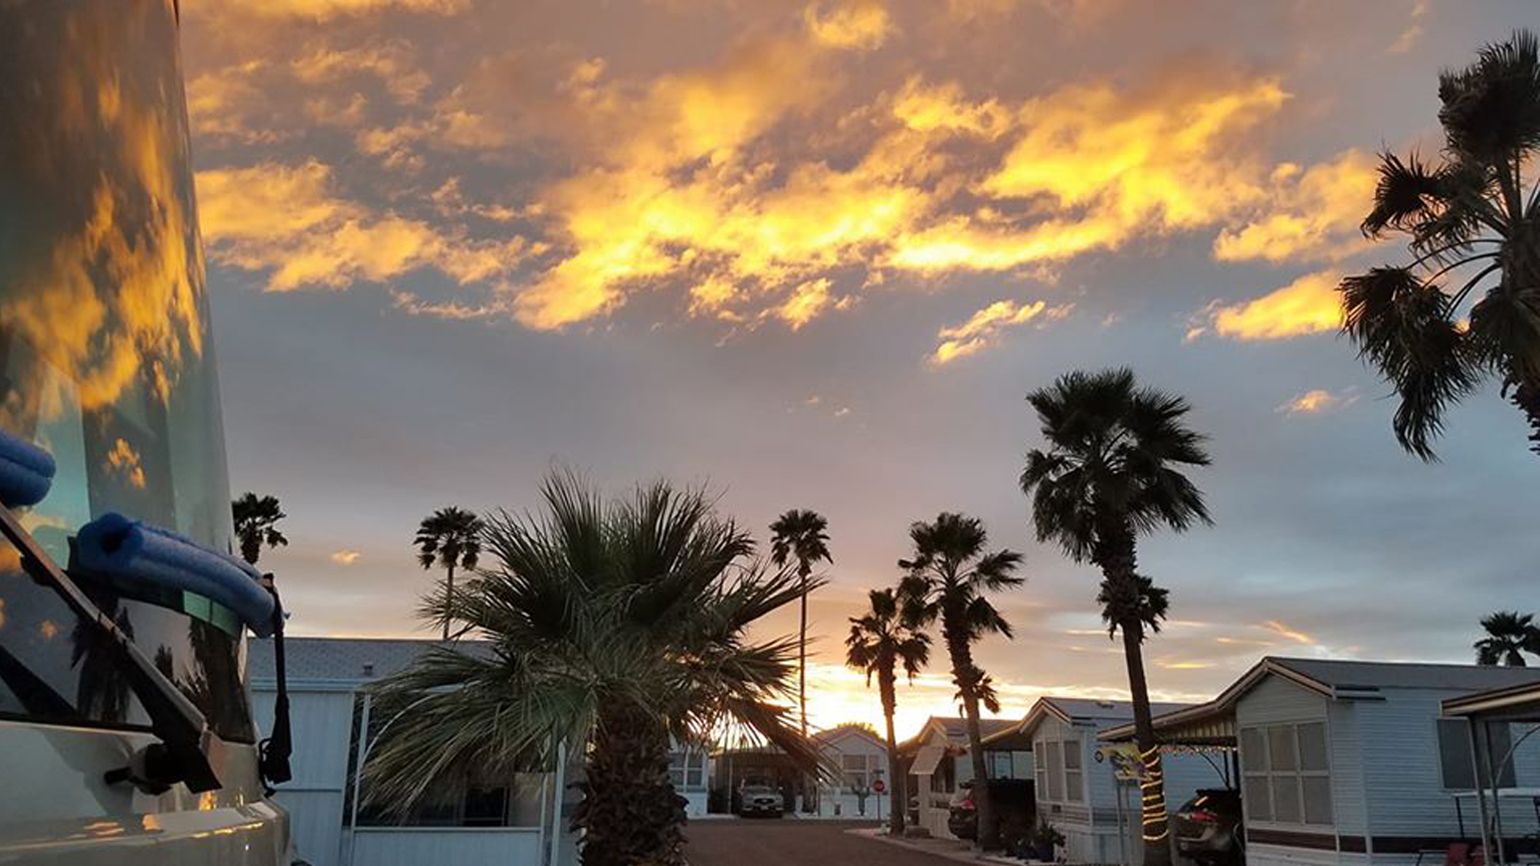 Sunset in Mesa, Arizona.